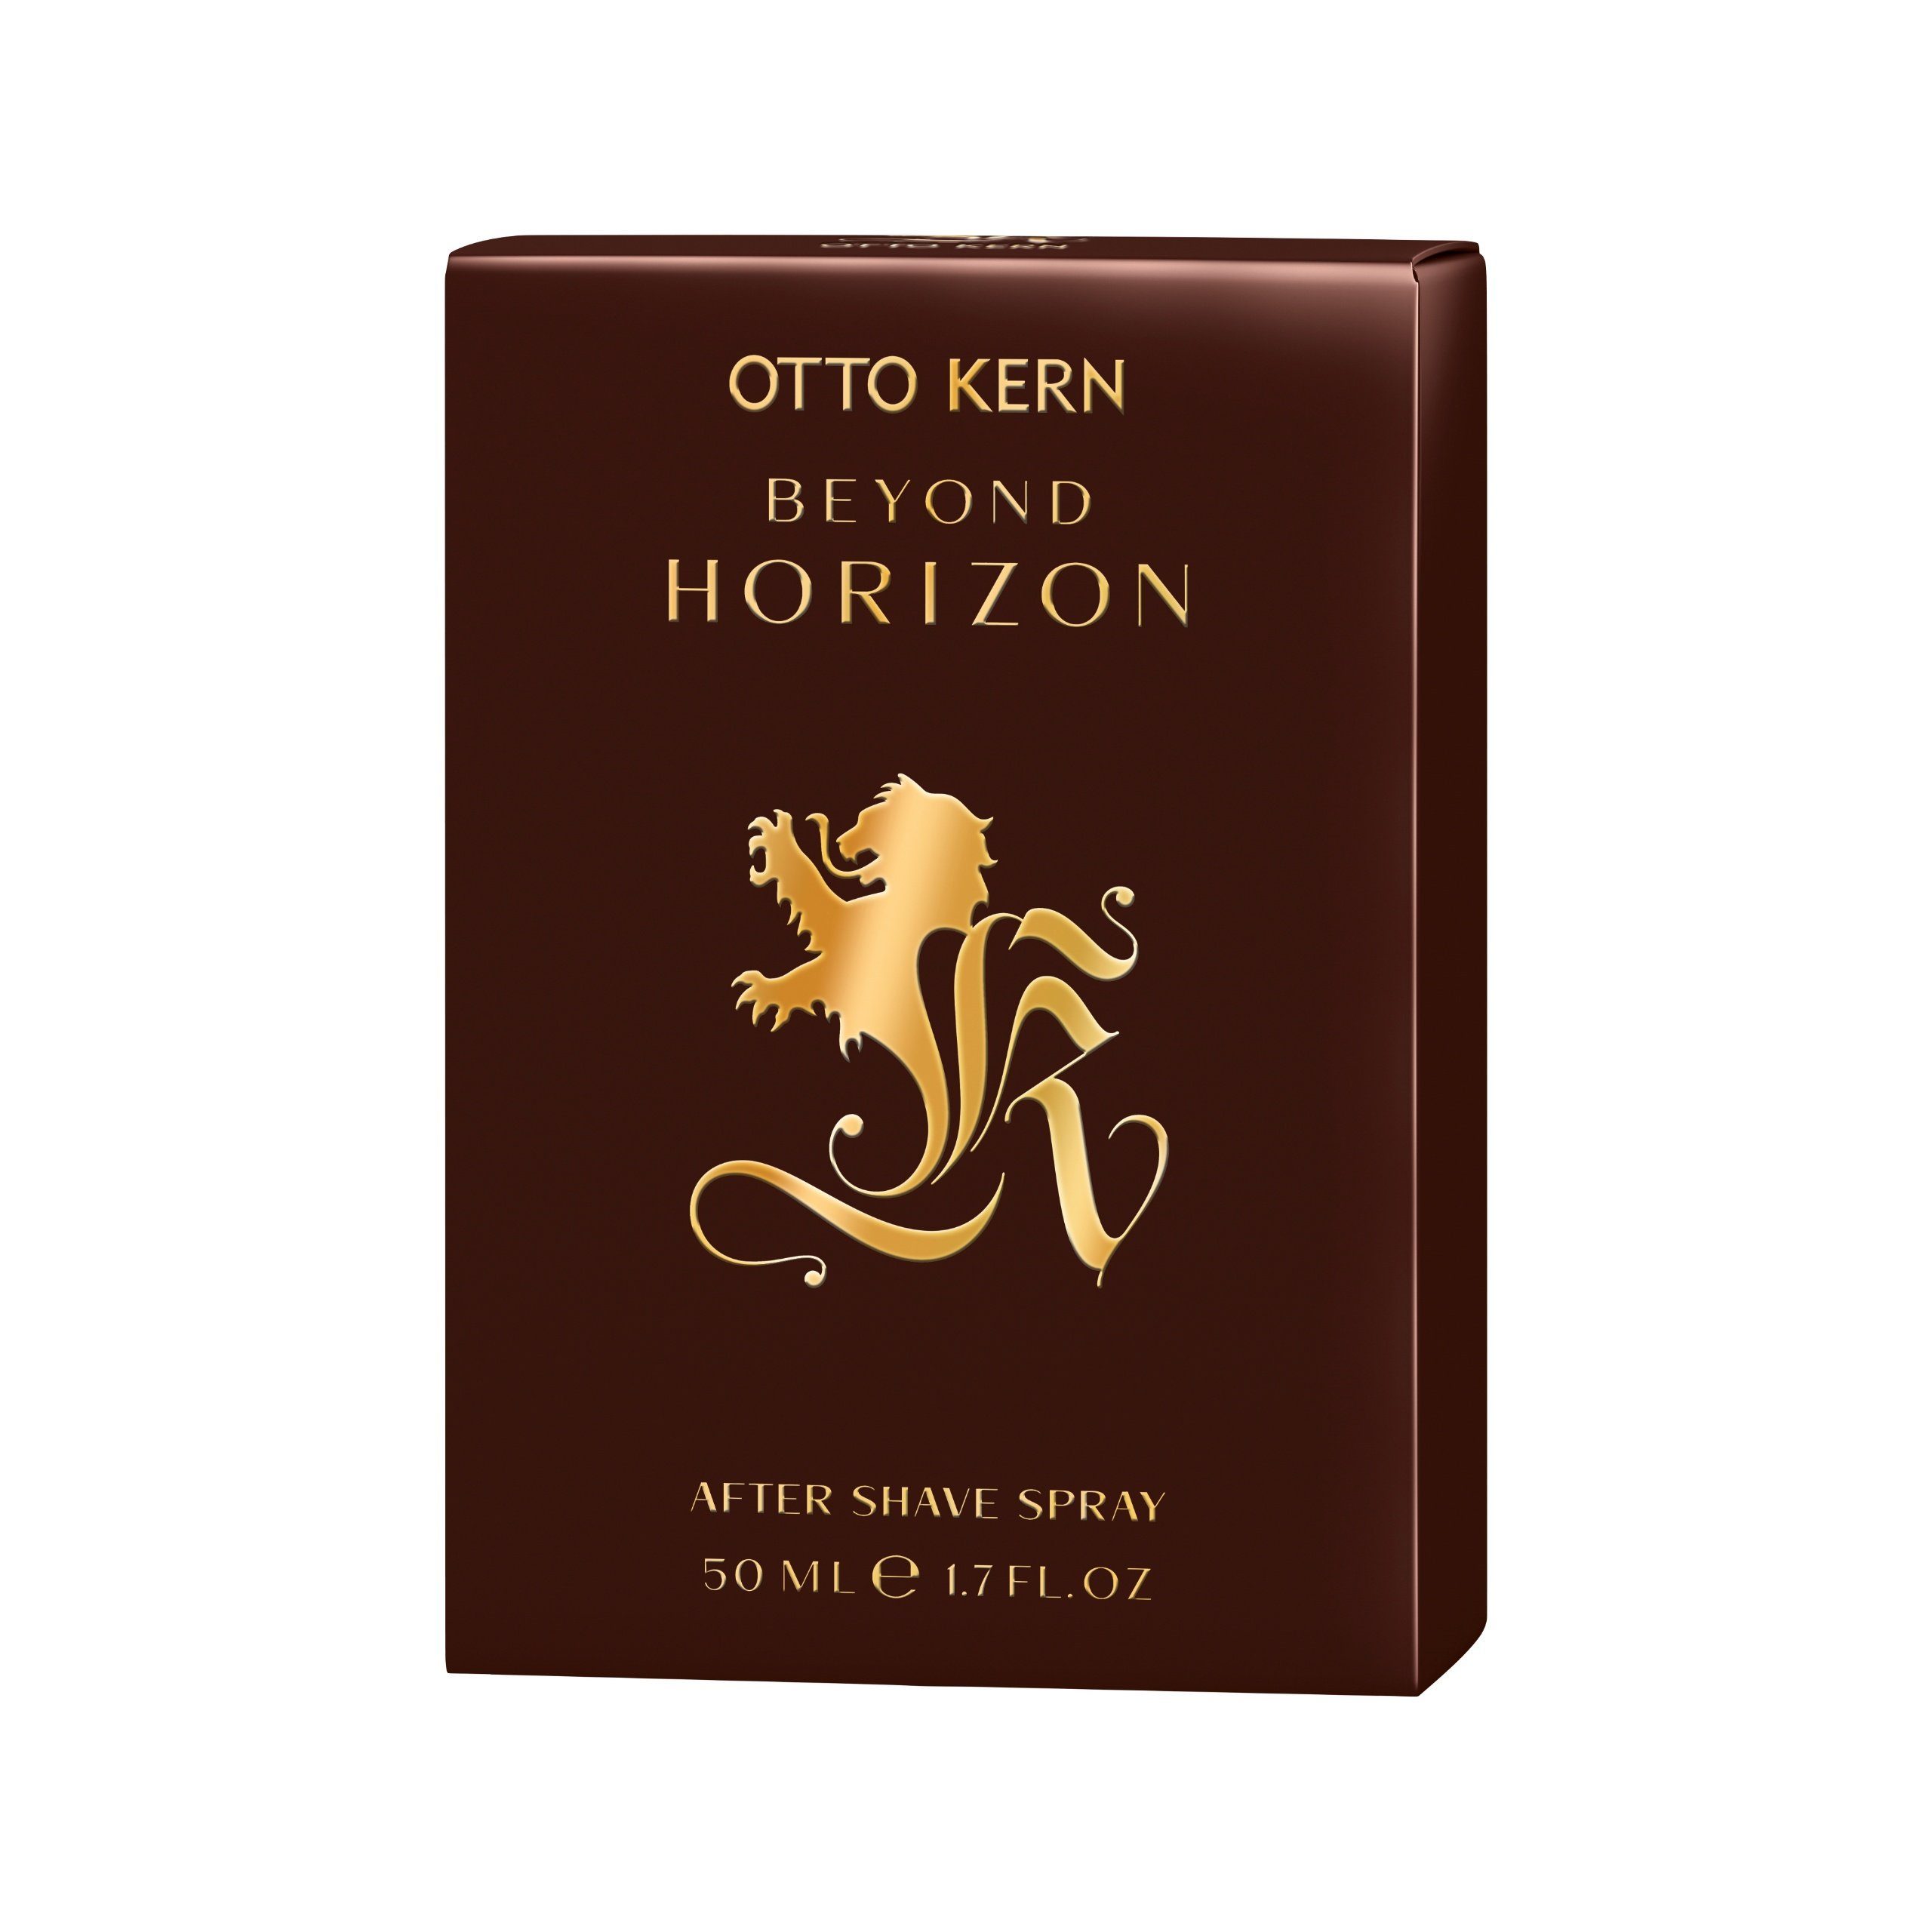 Kern 50 Spray Horizon Gesichts-Reinigungslotion After ml Kern Kern Shave Otto Beyond